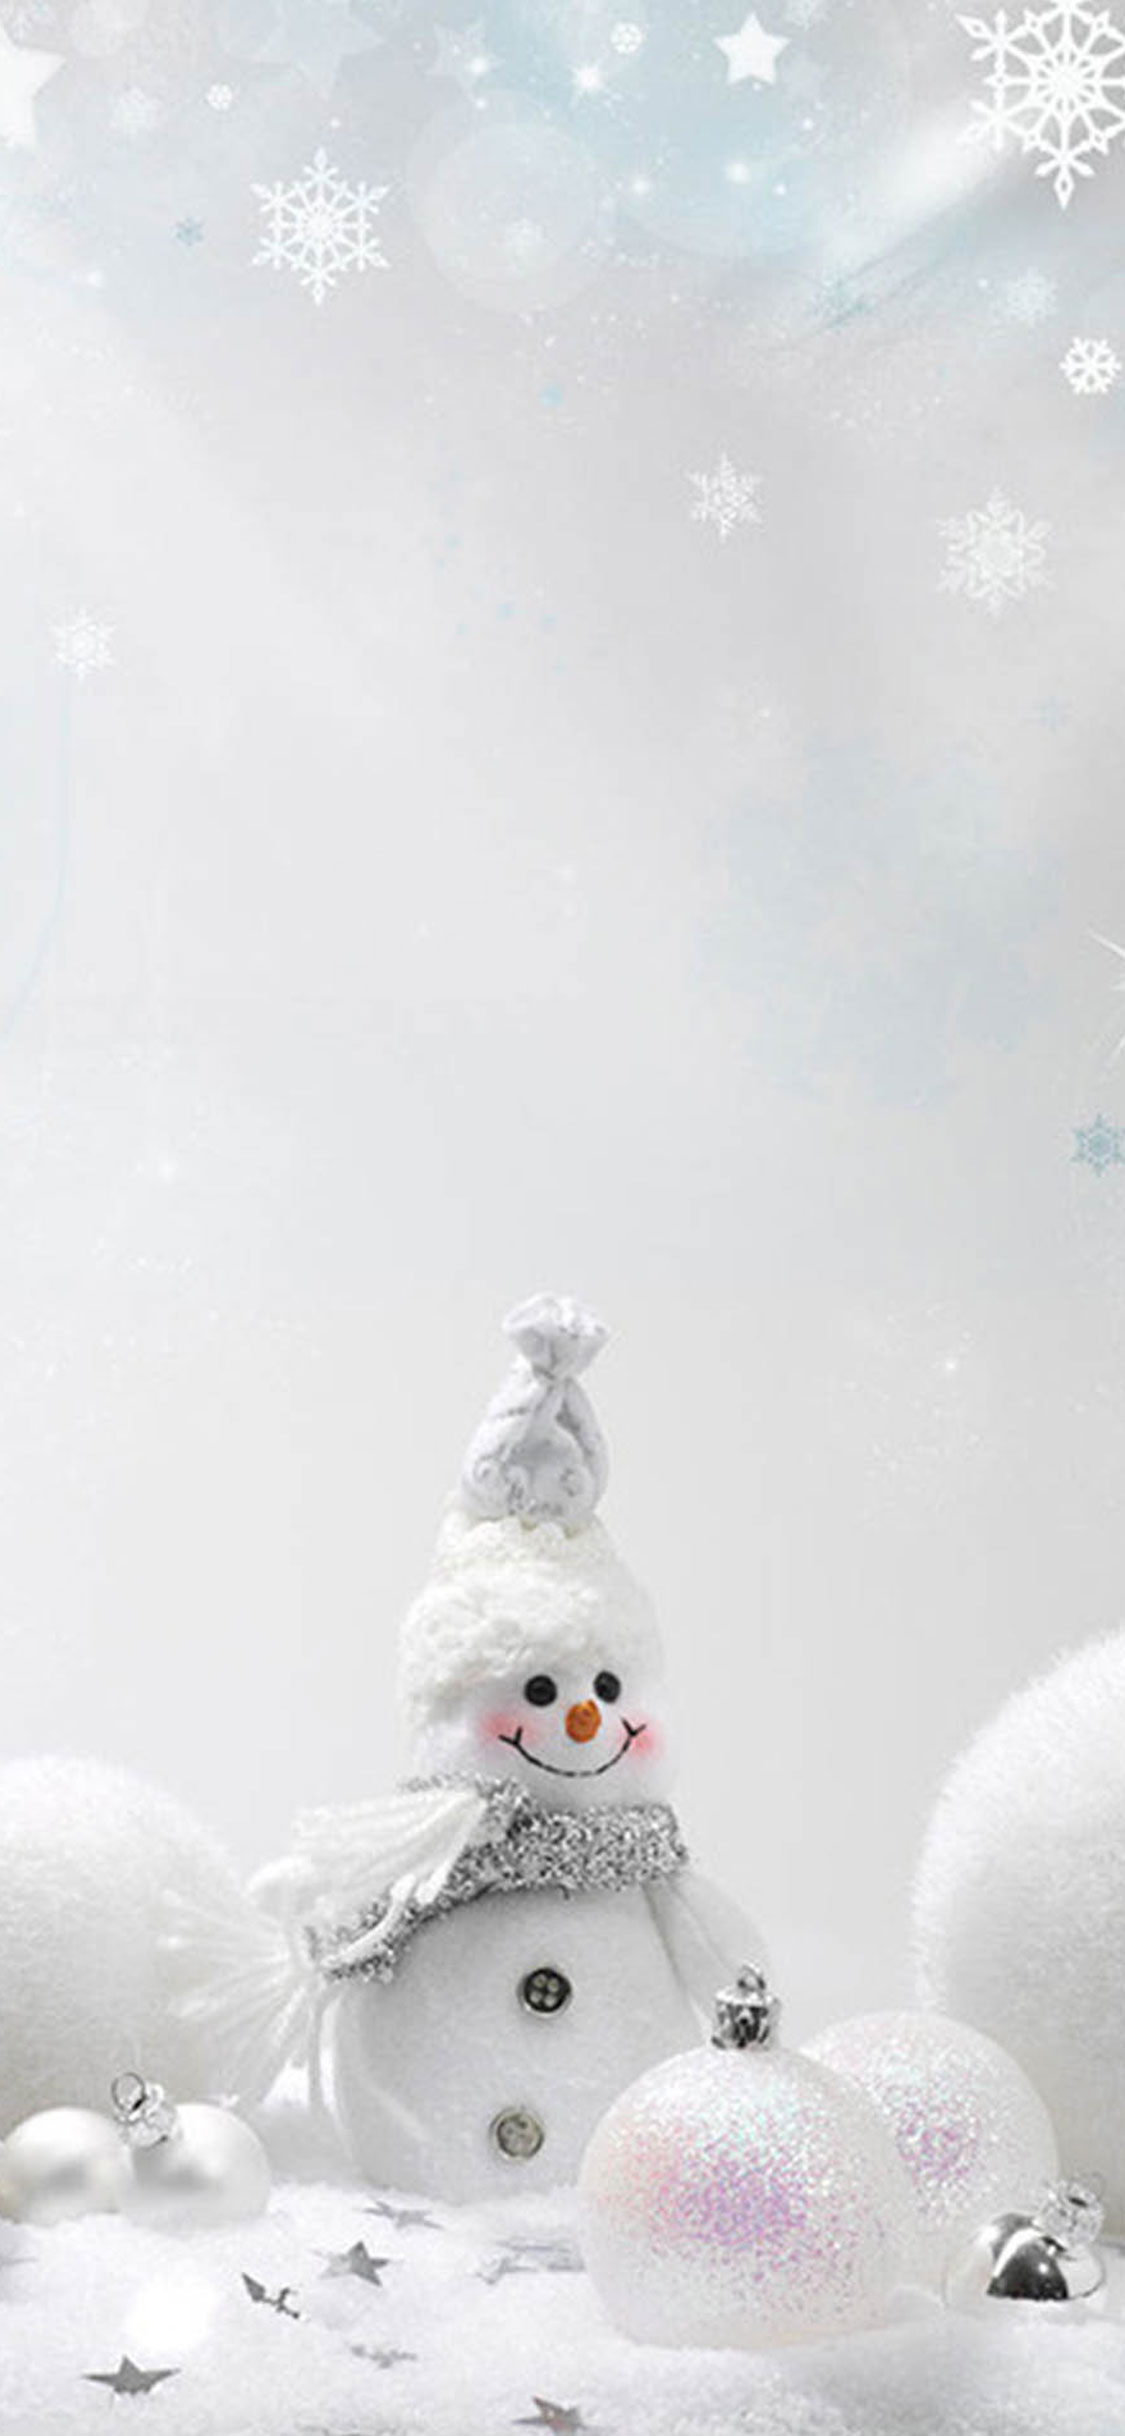 White Snowman.jpg